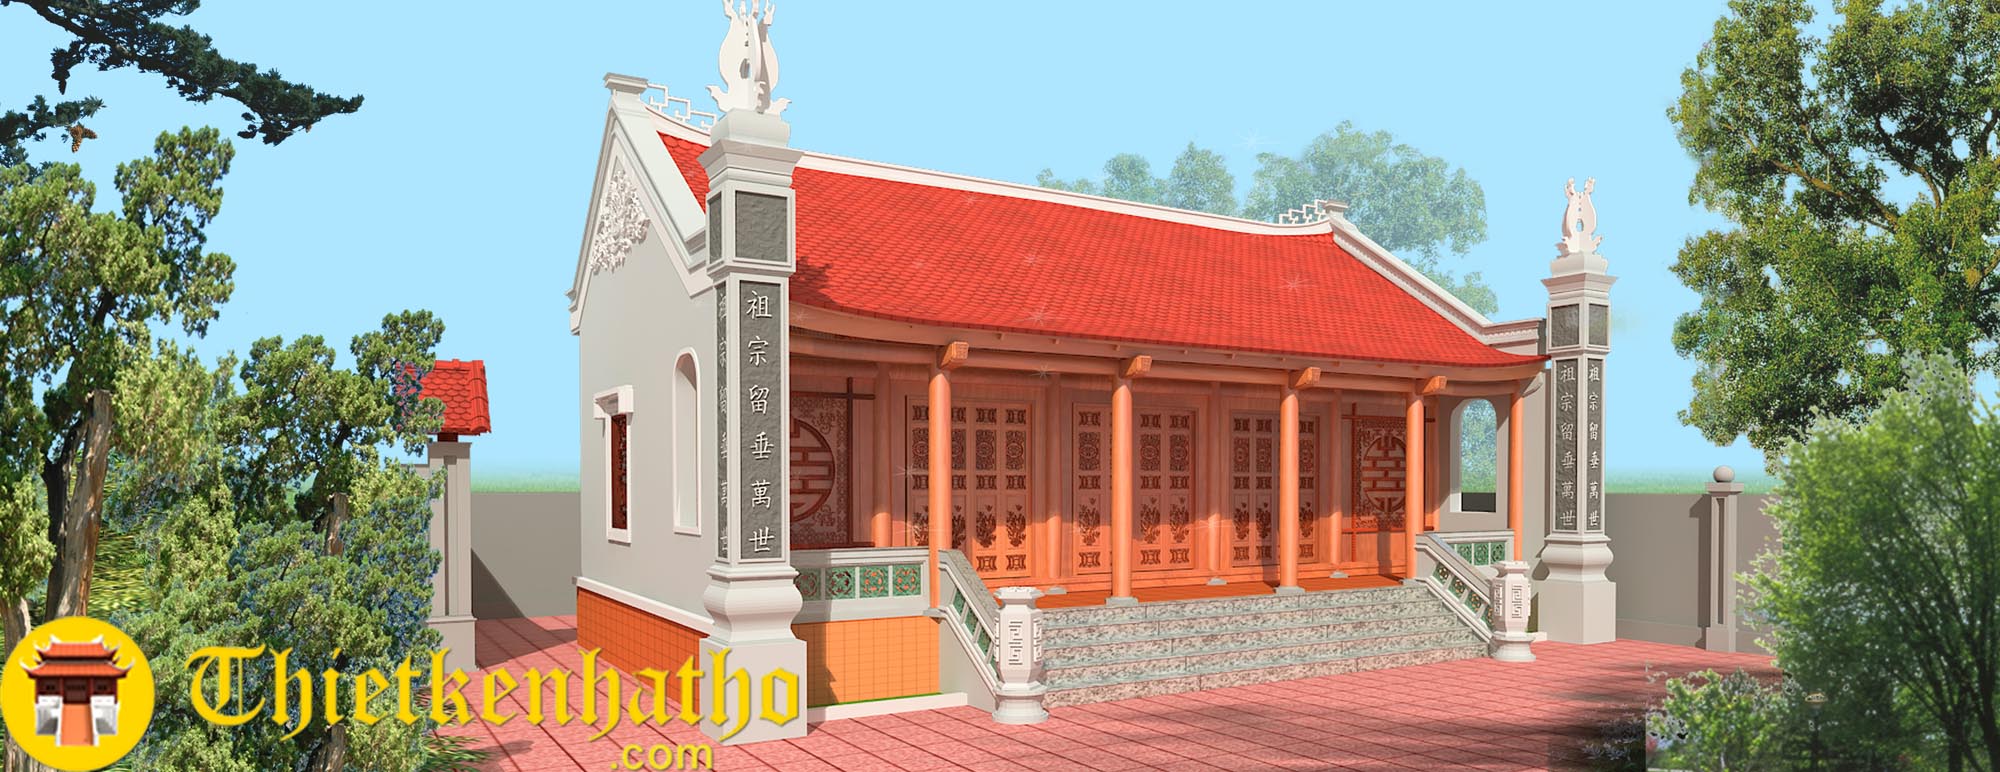 3. Nhà thờ anh Long  - Nam Định